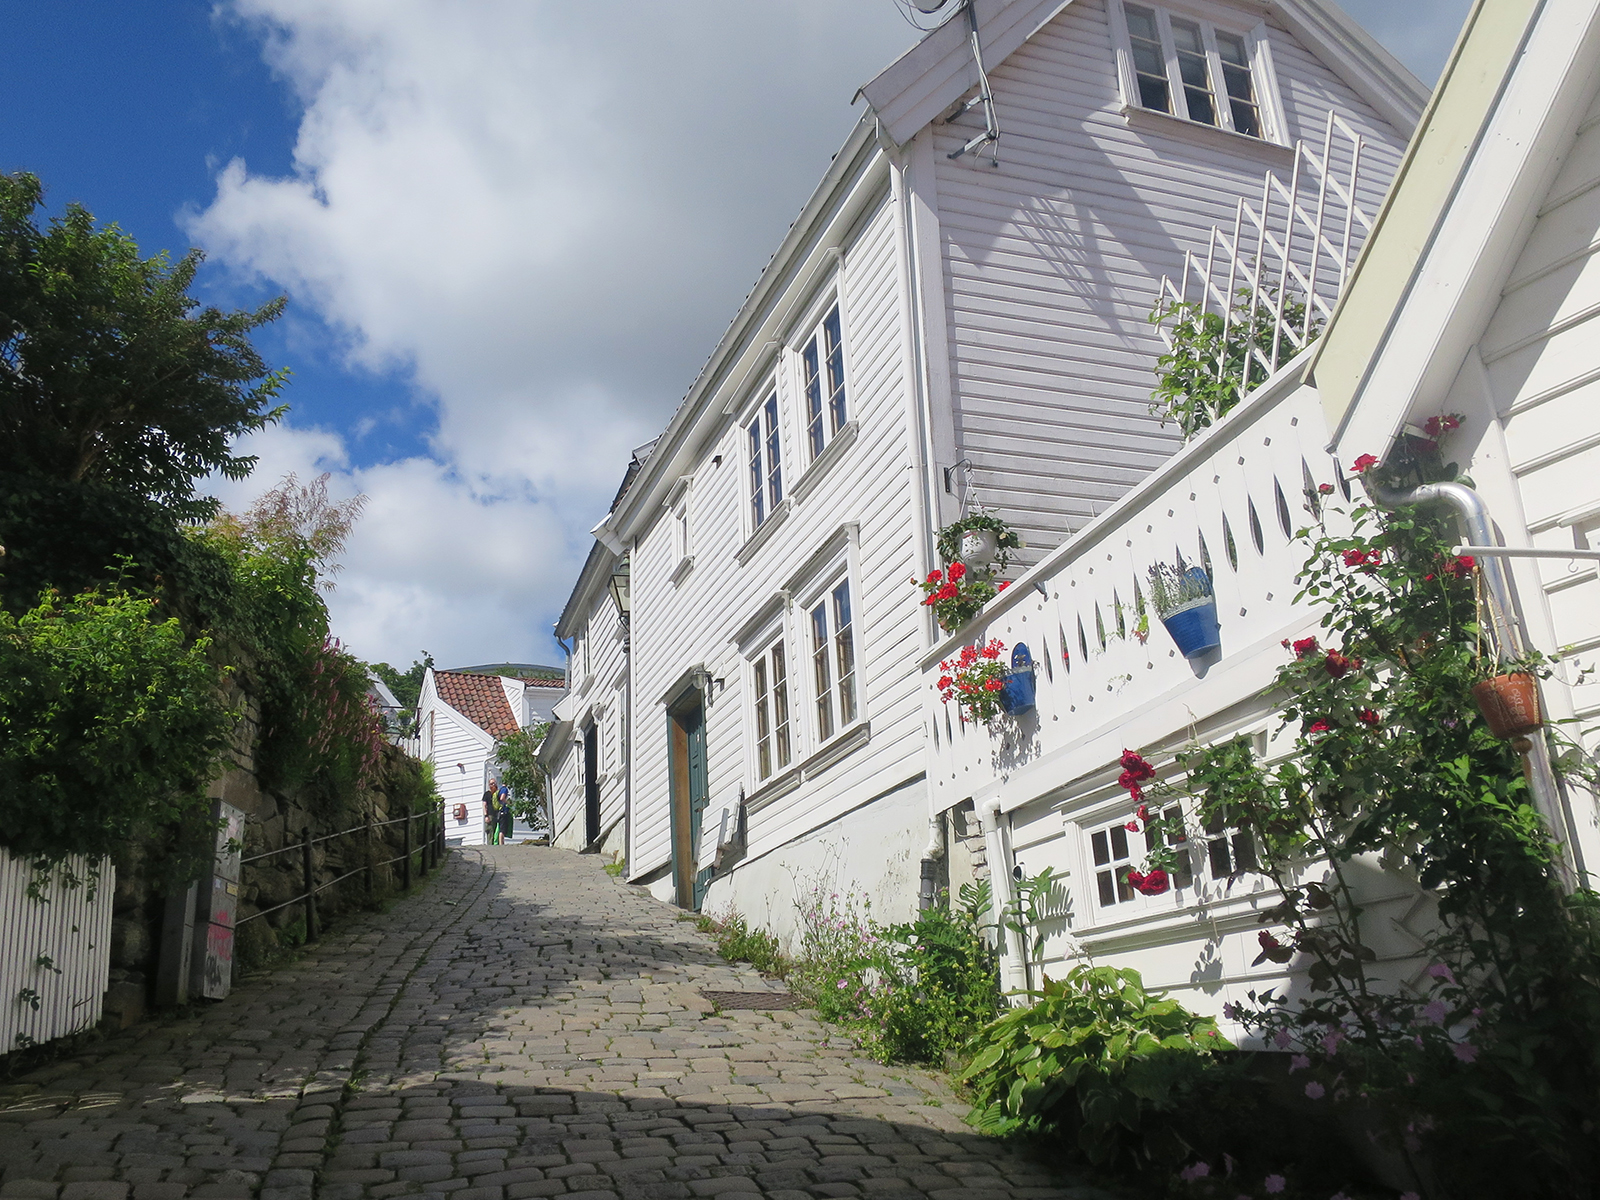 Stop-over Stavanger: Warum man bei einer Norwegen-Kreuzfahrt in Stavanger an Land gehen sollte